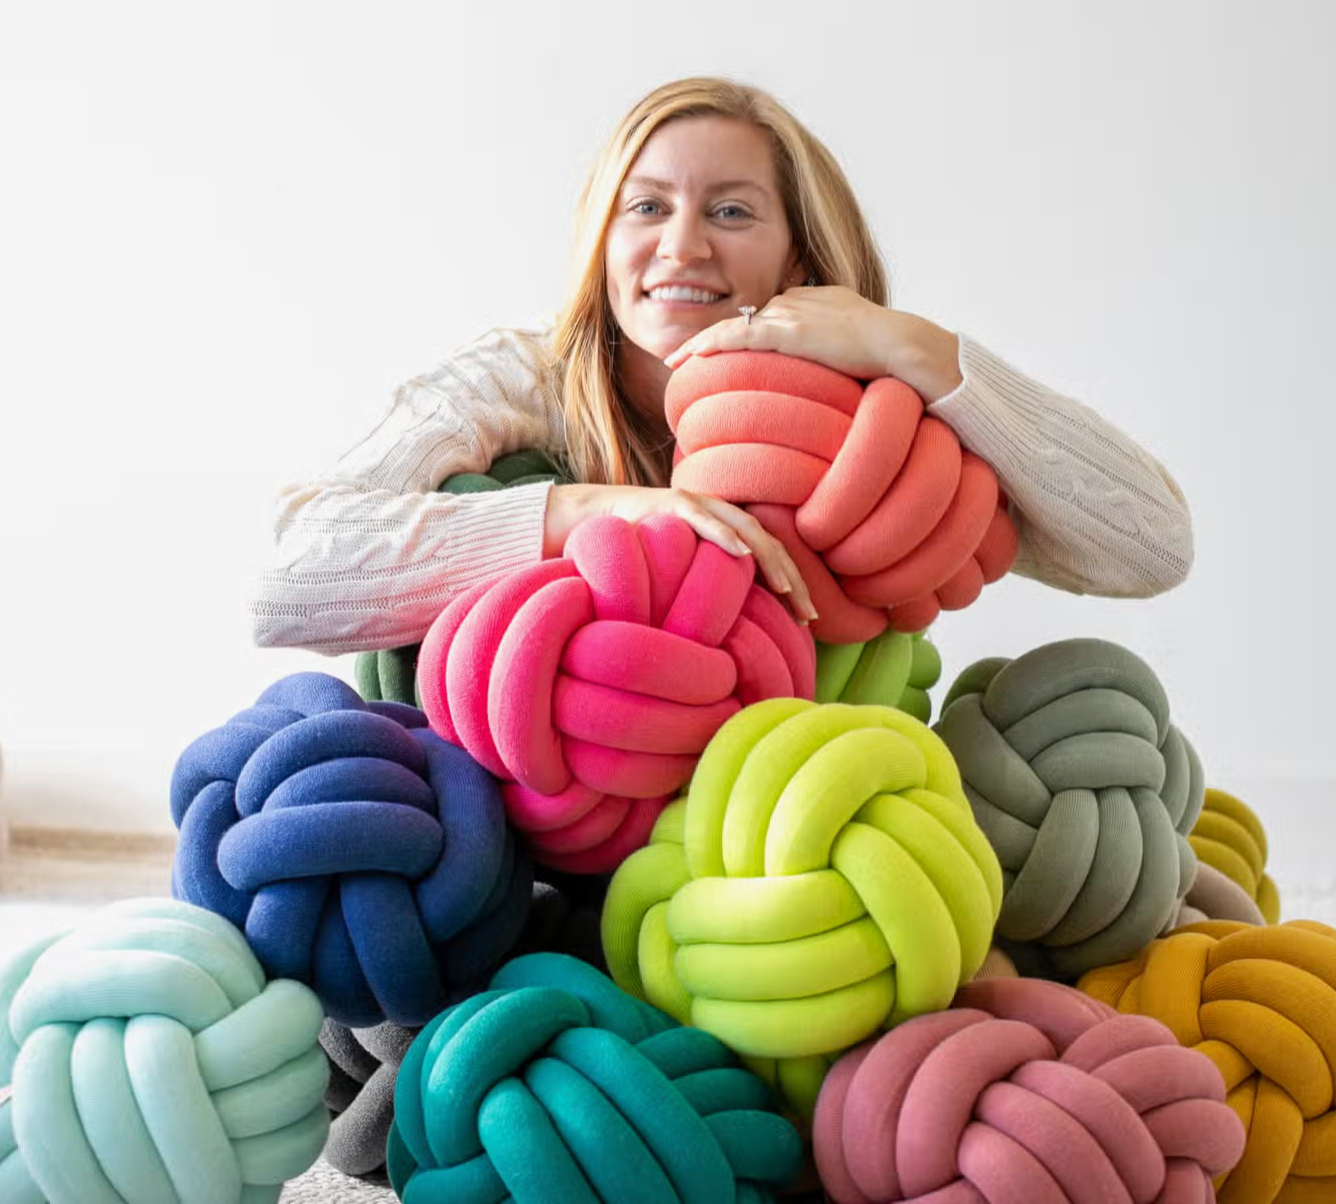 Knot decorative pillow - 100% Cotton